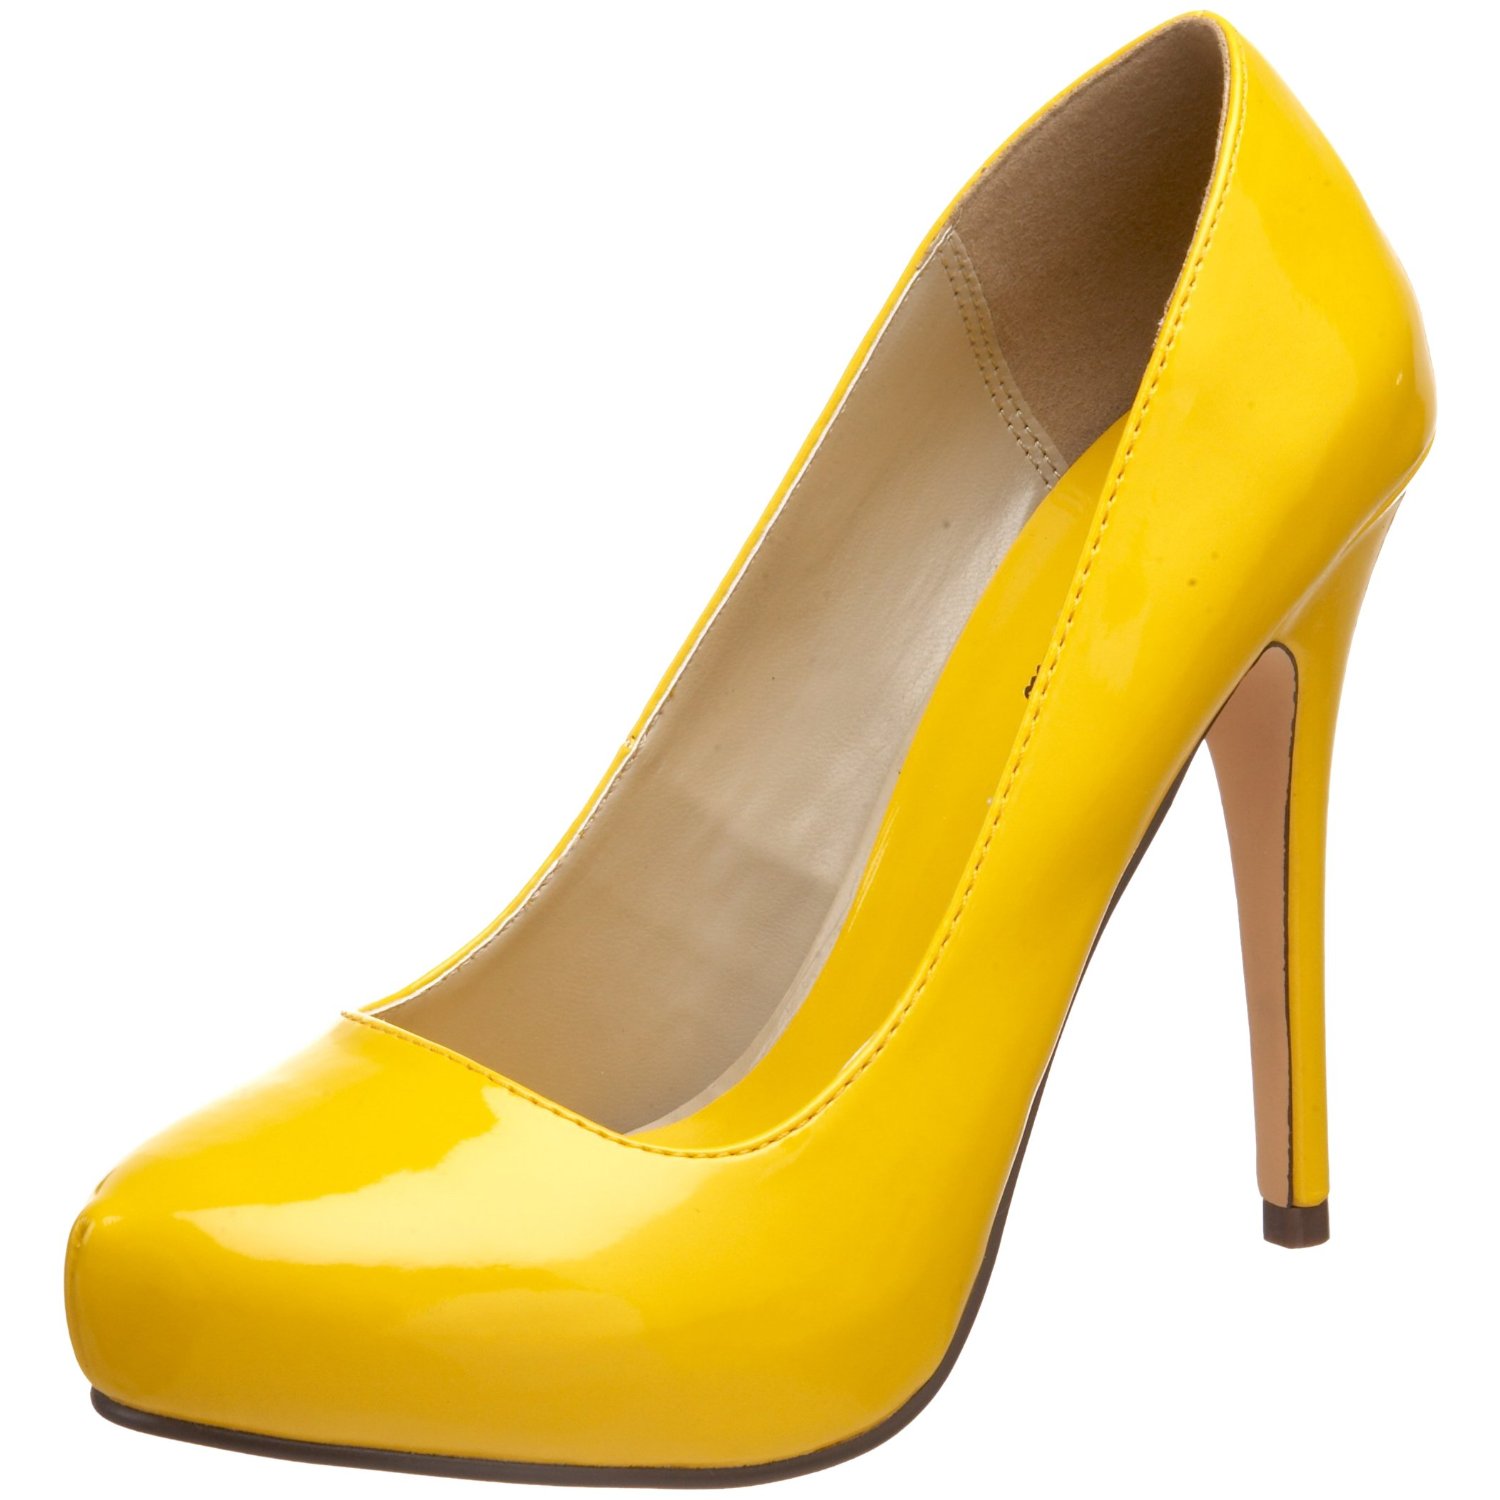 yellow shoes vehulfo